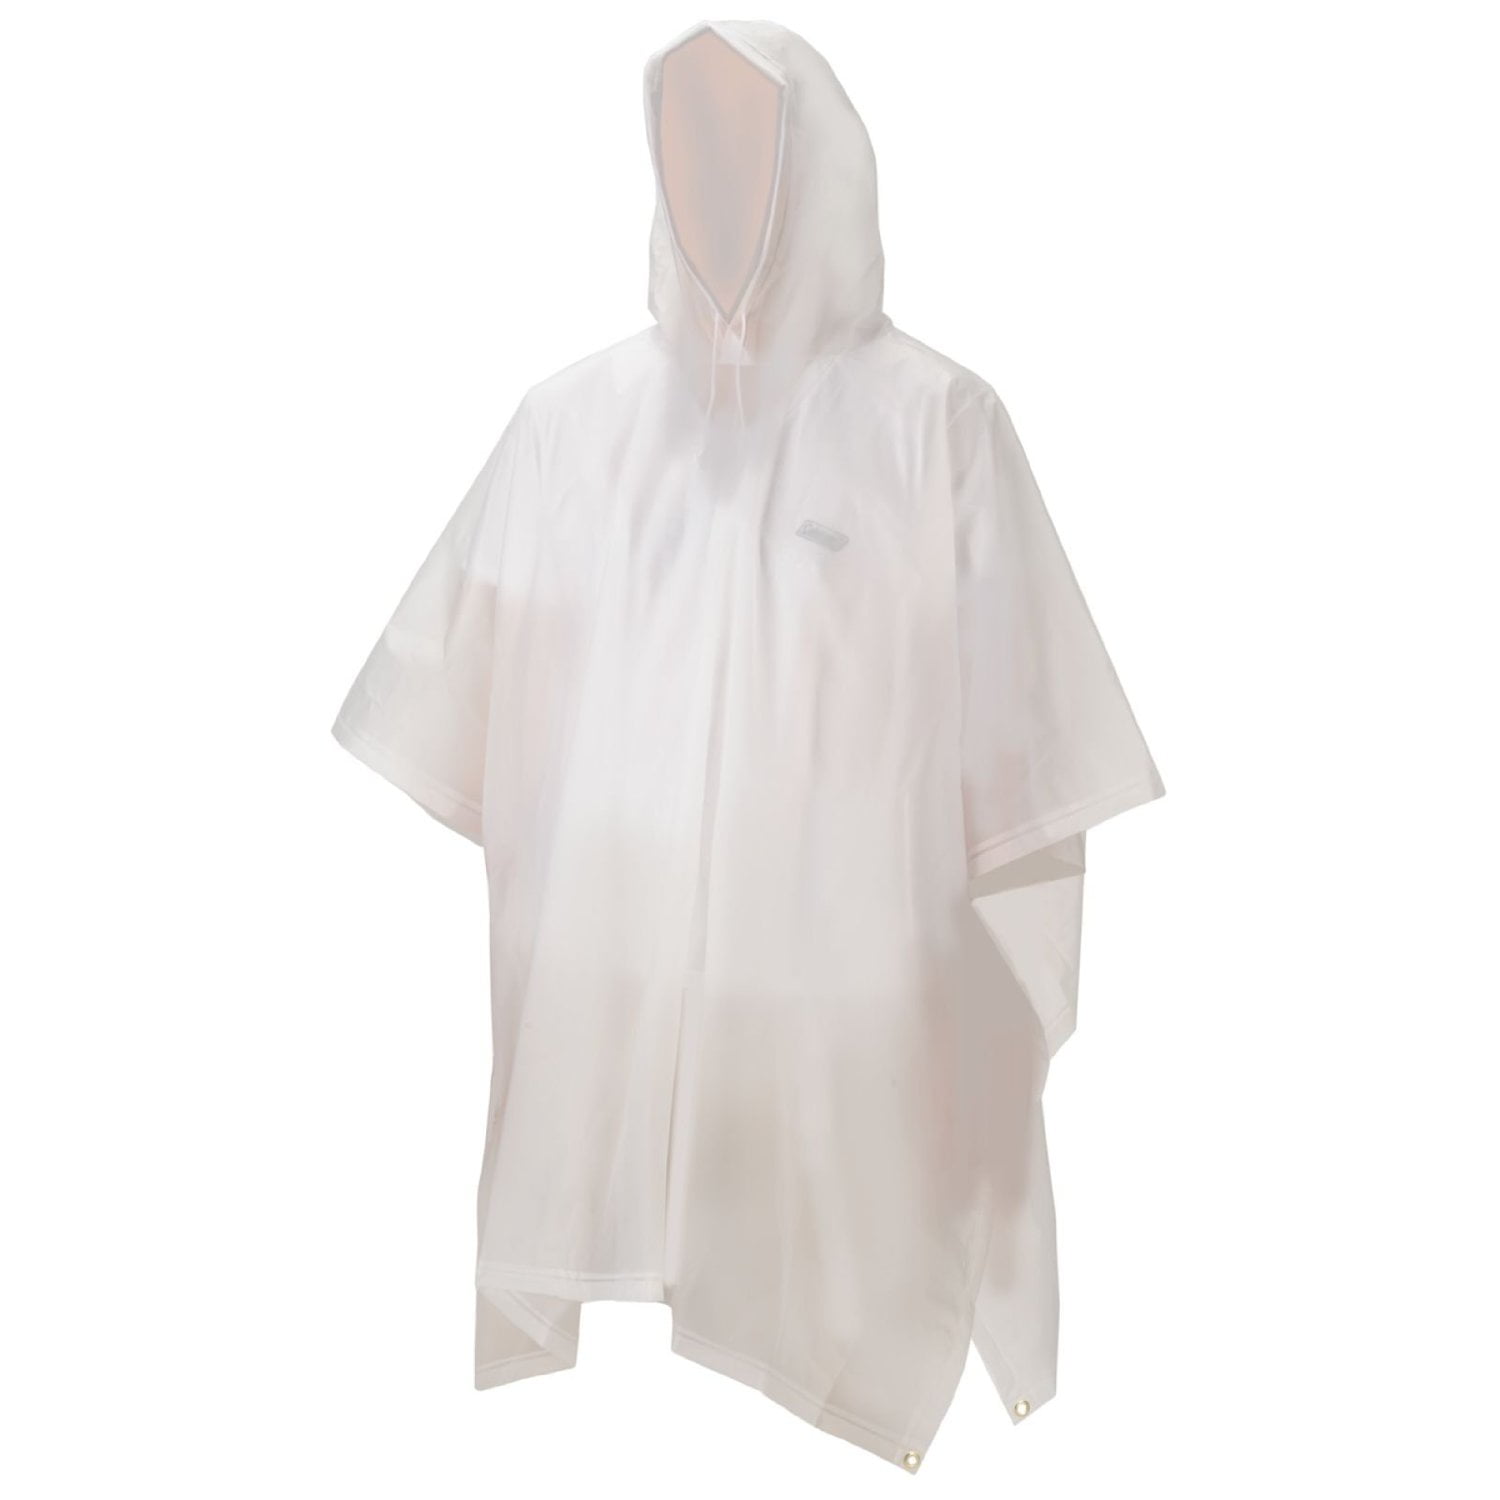 show original title Details about   Disposable Adults Poncho Rain Jacket Rain Coat Unisex Rain Cape Emergency Womens 